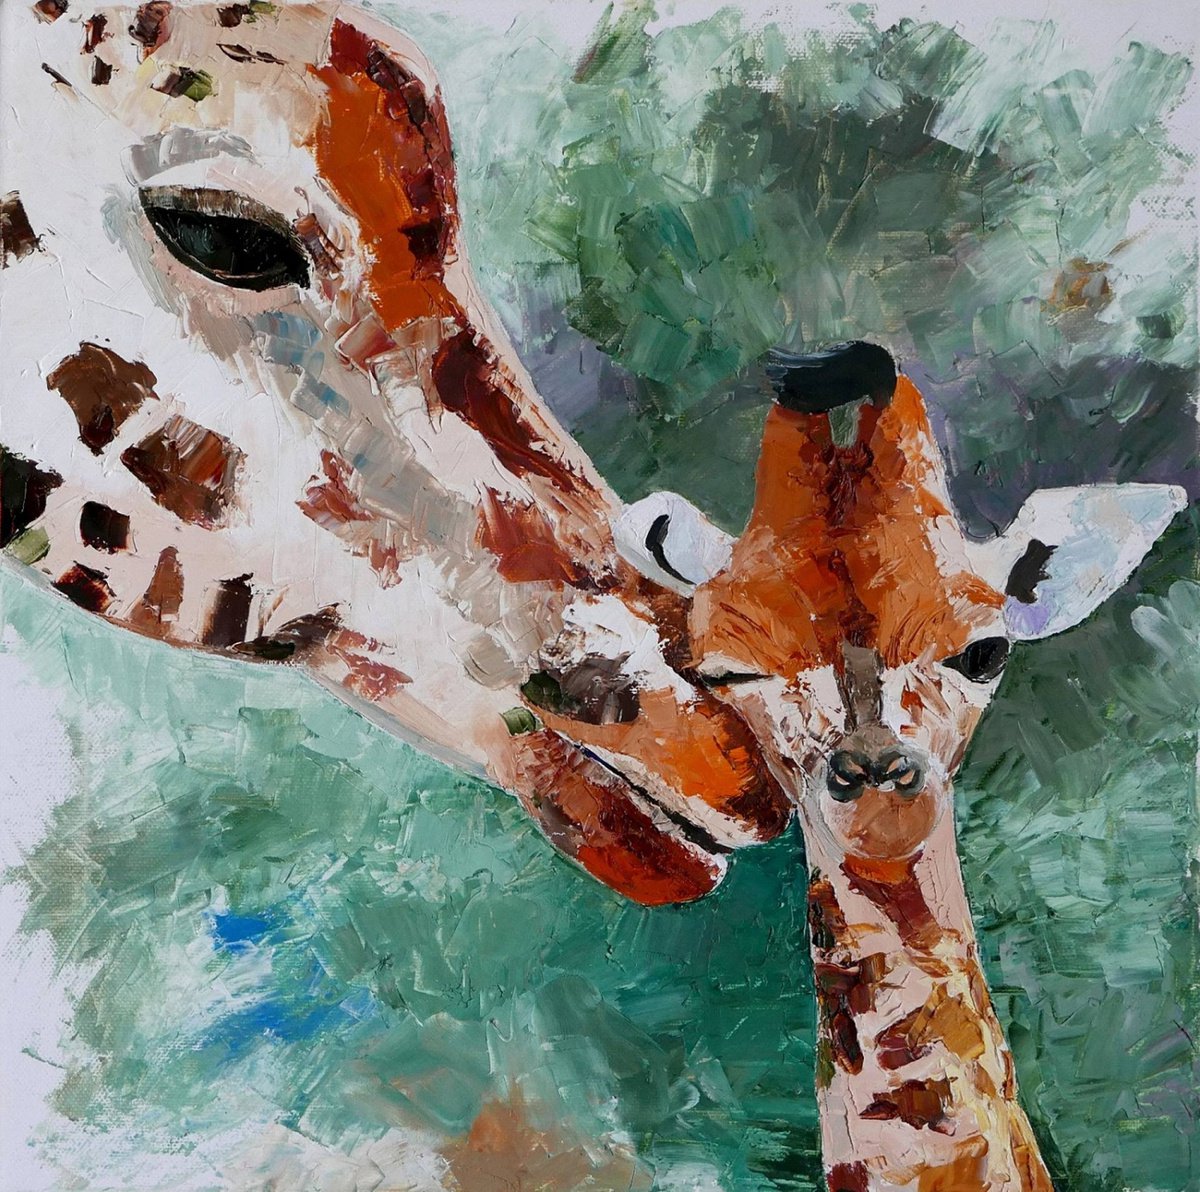 Giraffes by Ekaterina Mitrofanova